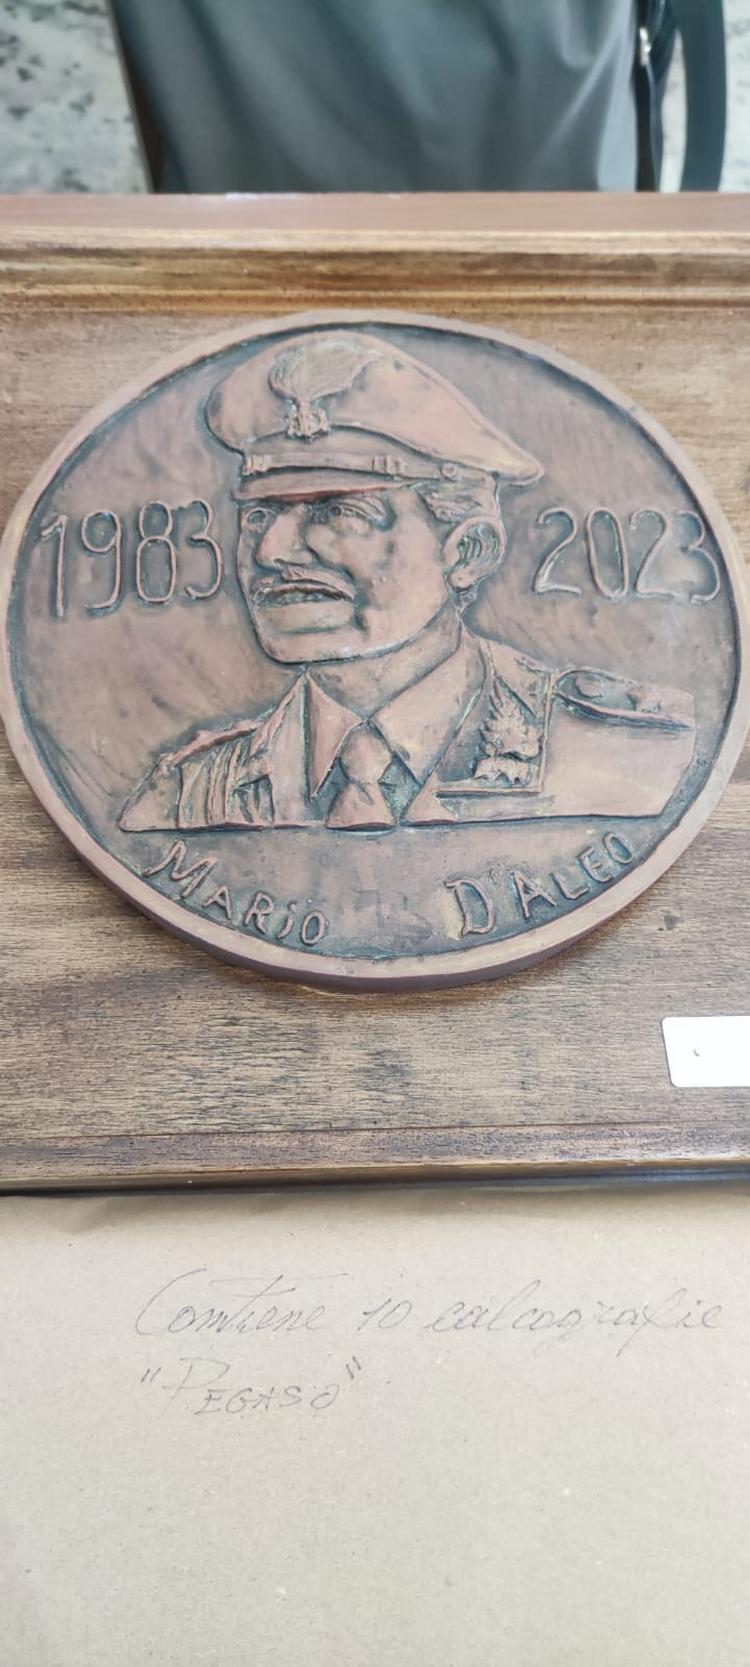 Una medaglia celebrativa per il Capitano Mario D’Aleo realizzata dall’artista Daniele Iovino